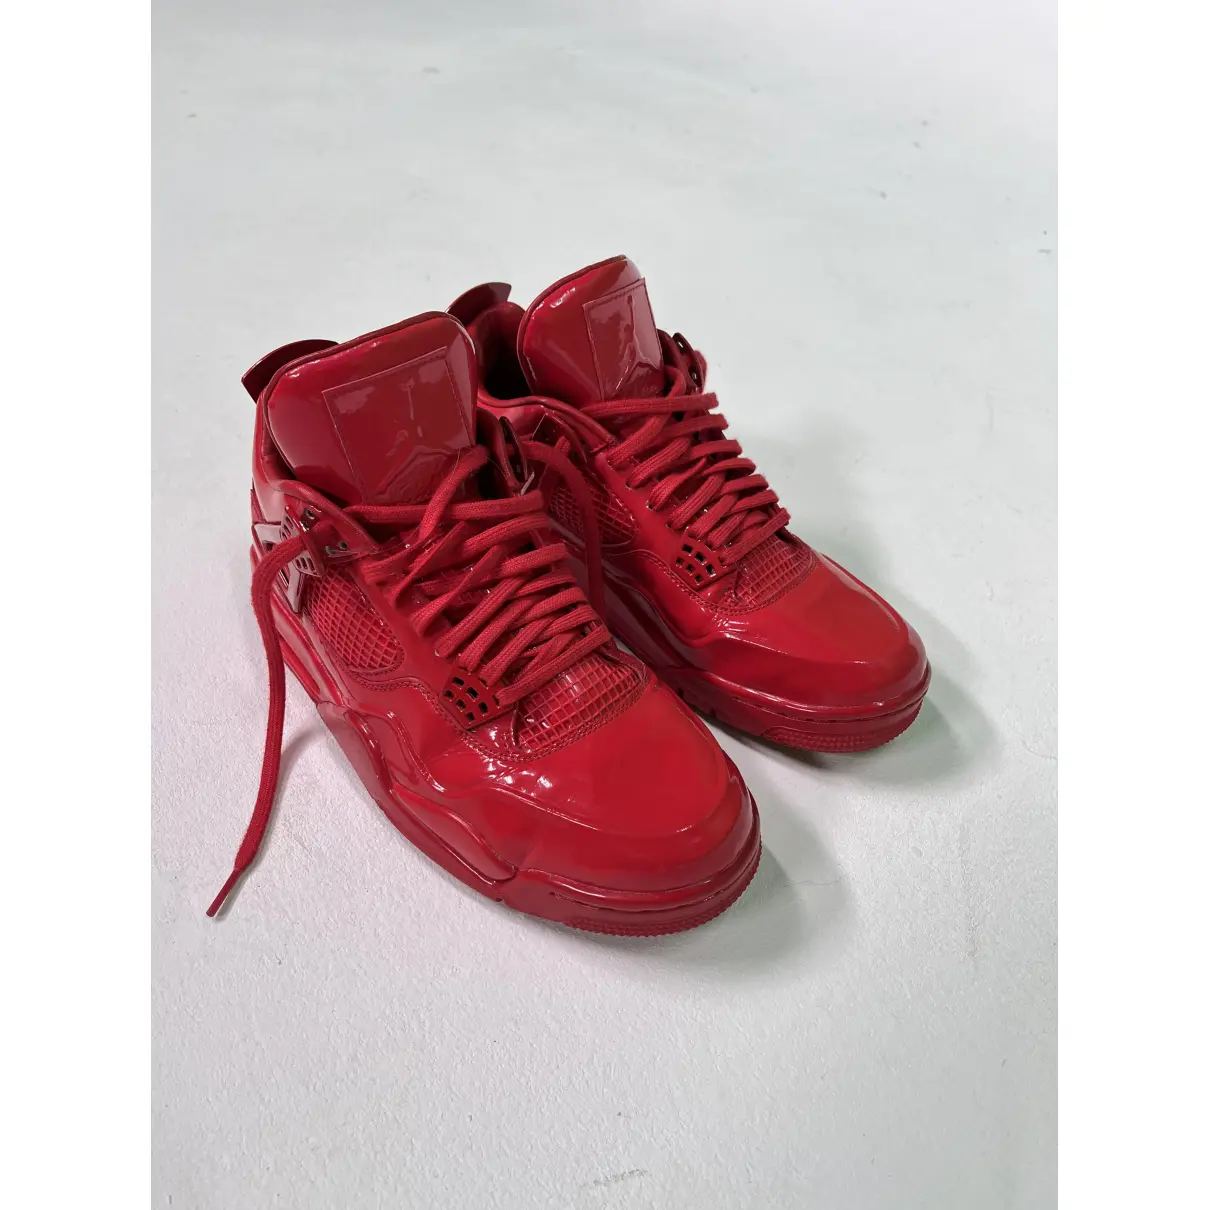 Buy JORDAN Air Jordan 4 patent leather high trainers online